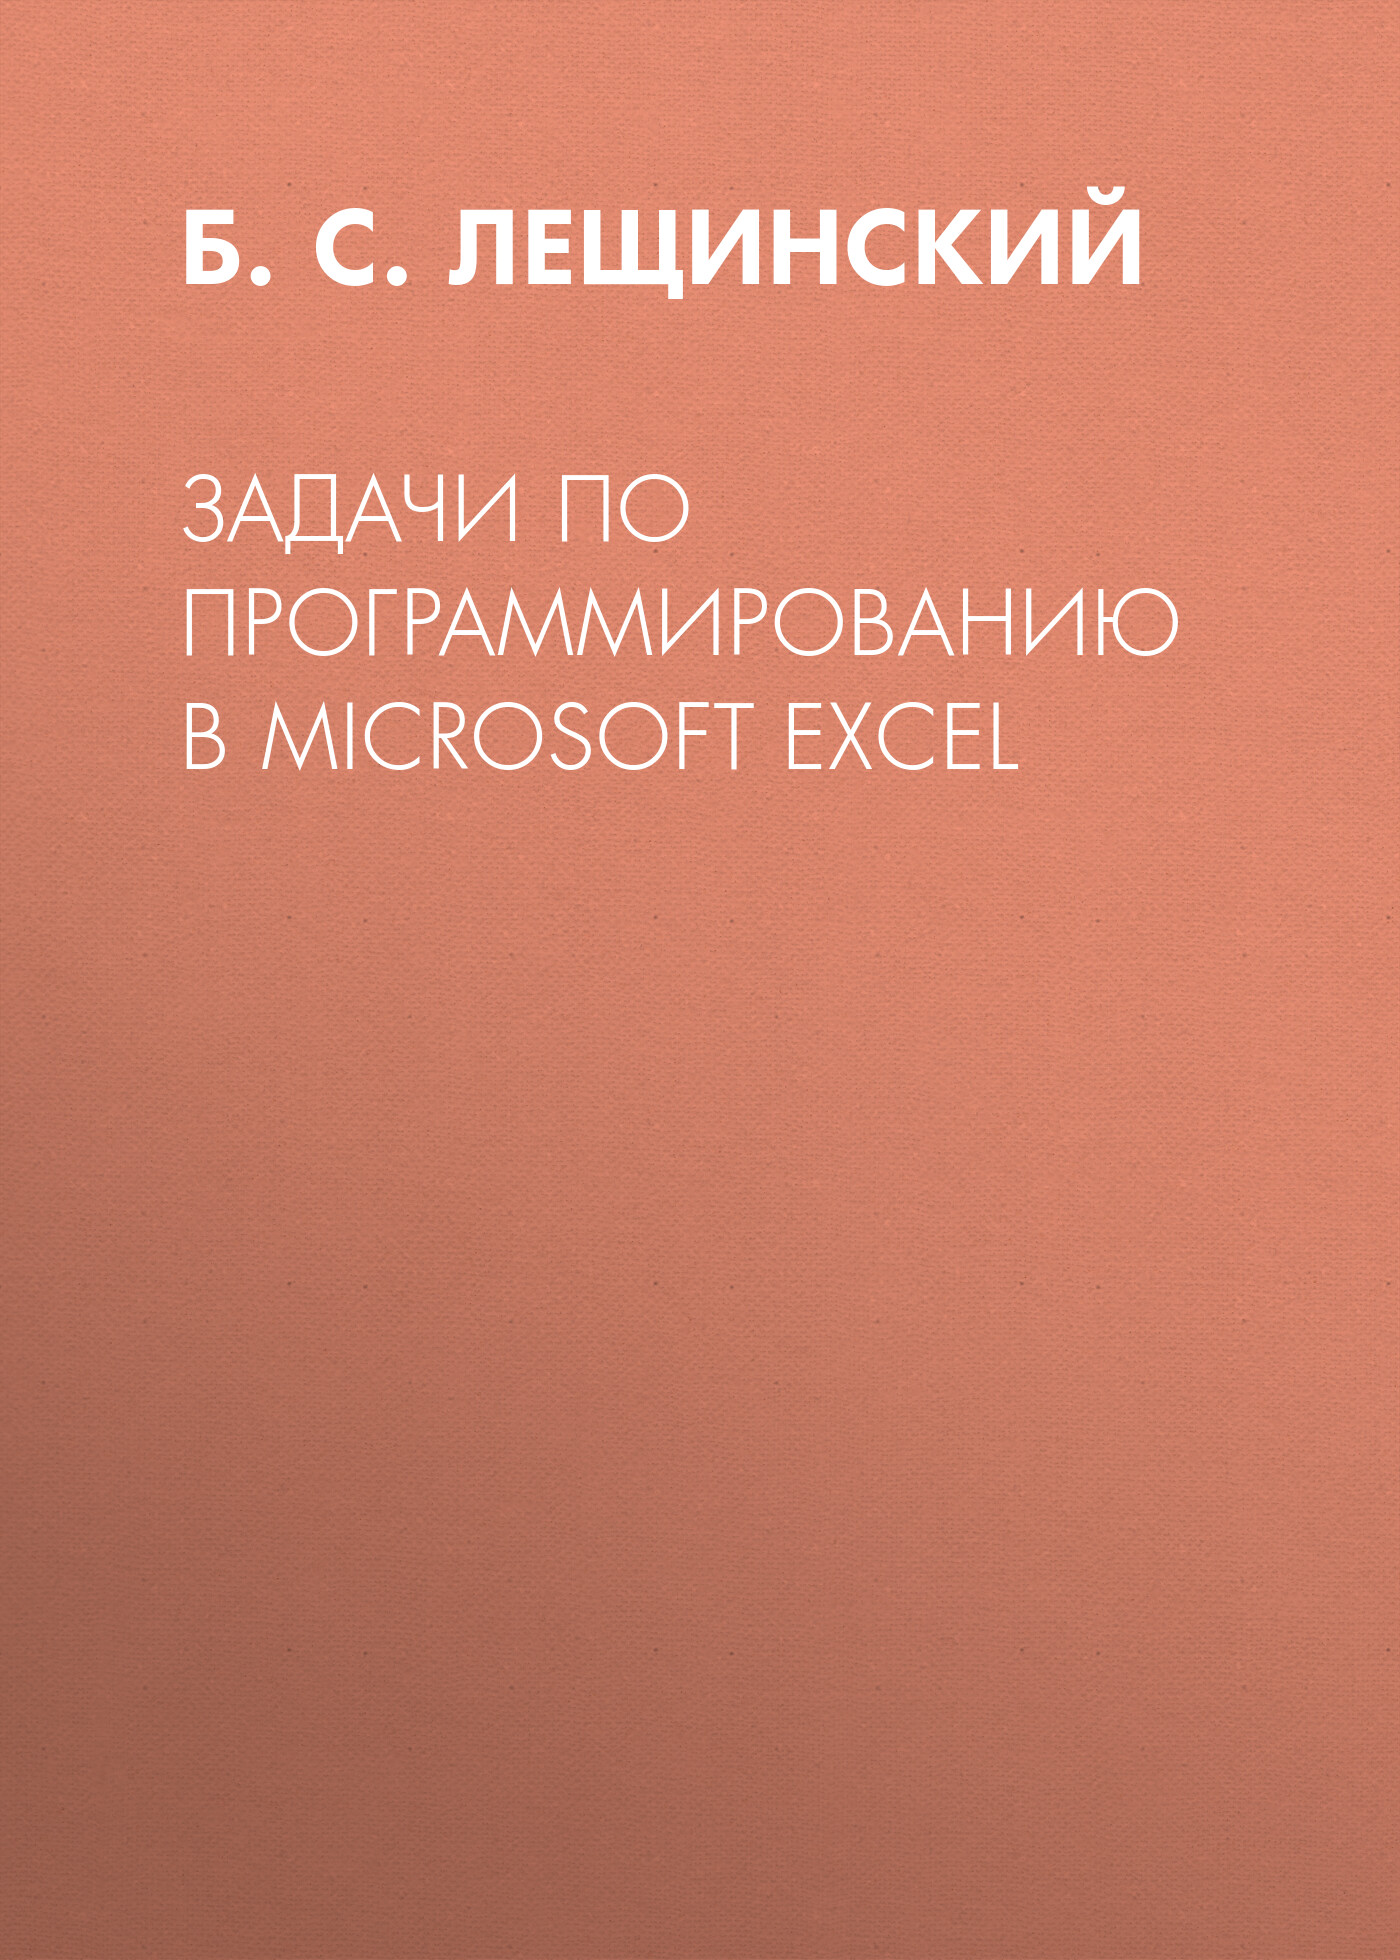 Книга  Задачи по программированию в Microsoft Excel созданная Б. С. Лещинский может относится к жанру программирование, учебно-методические пособия. Стоимость электронной книги Задачи по программированию в Microsoft Excel с идентификатором 67272173 составляет 149.00 руб.